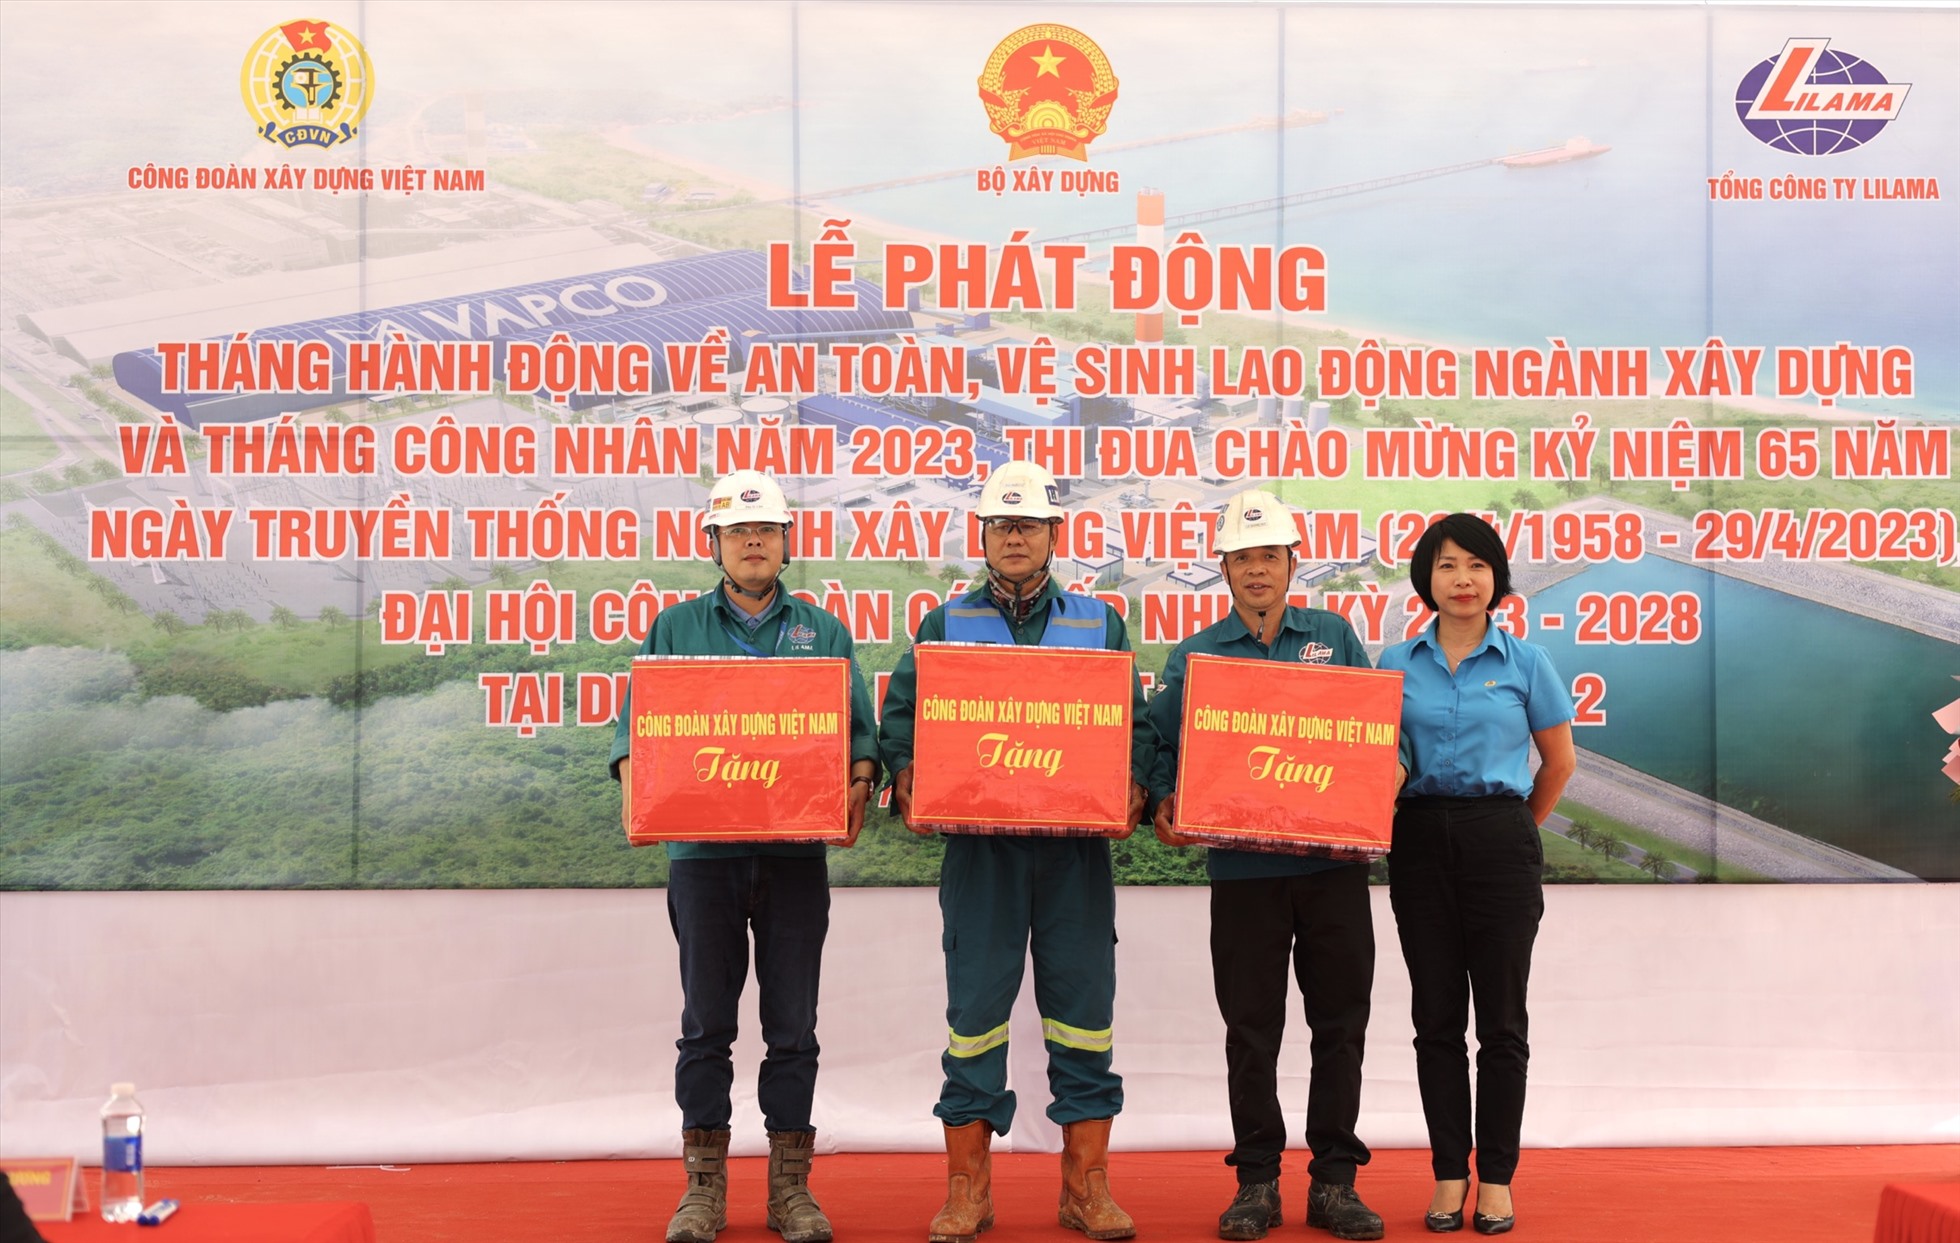 Chủ tịch Công đoàn Xây dựng Việt Nam Nguyễn Thị Thuỷ Lệ trao quà cho người lao động. Ảnh: Mạnh Tùng